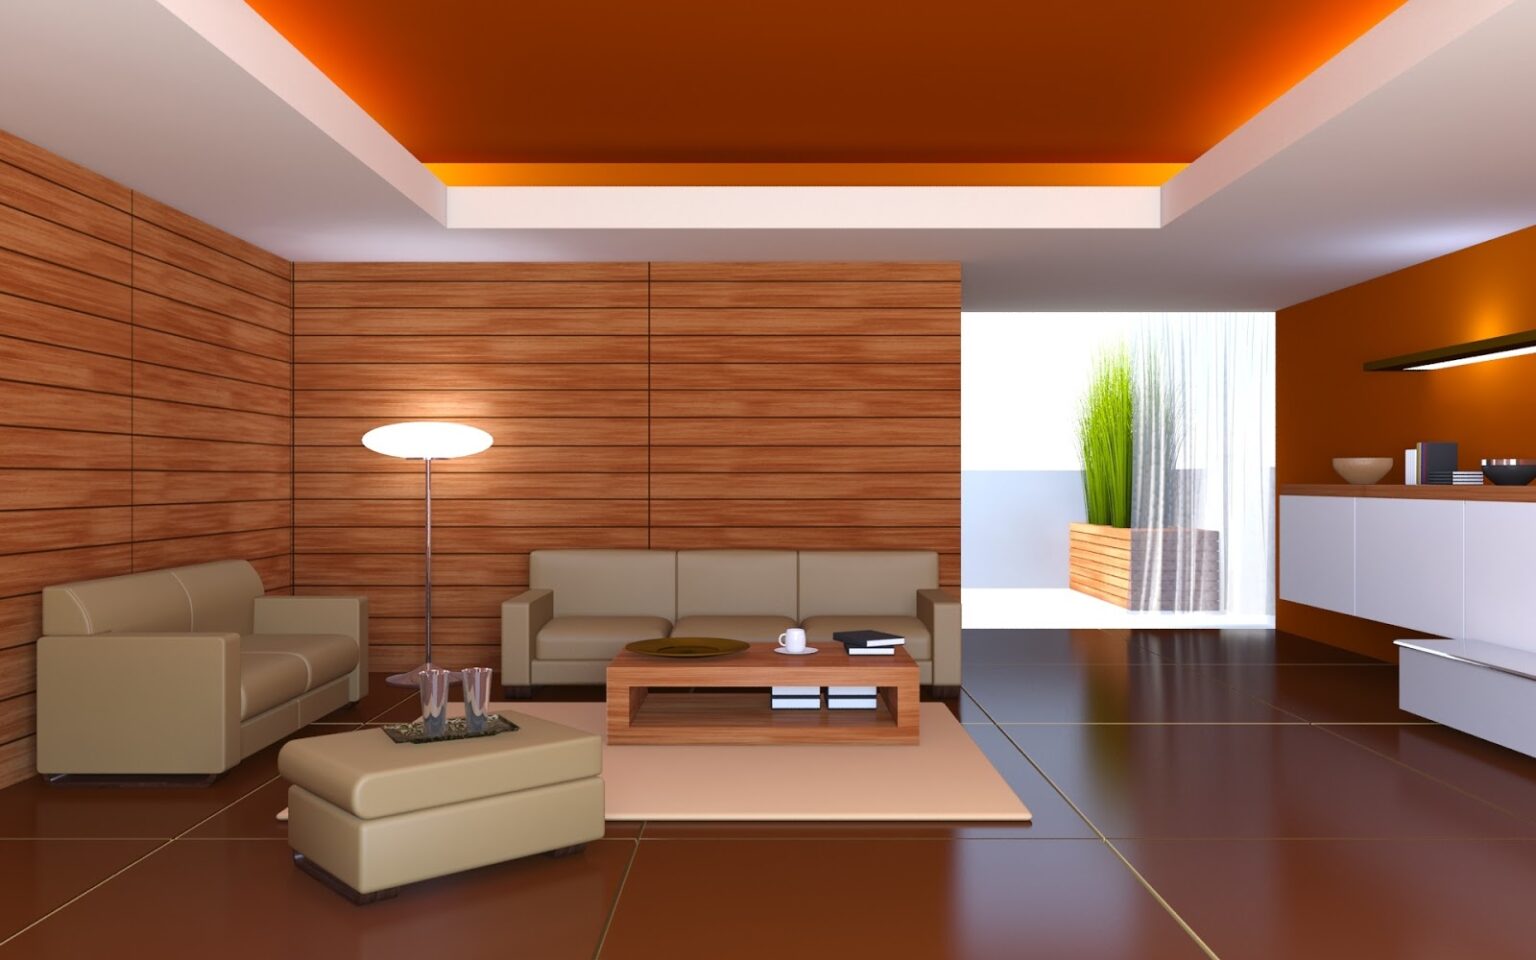 3D Interior Design 2 1536x960 